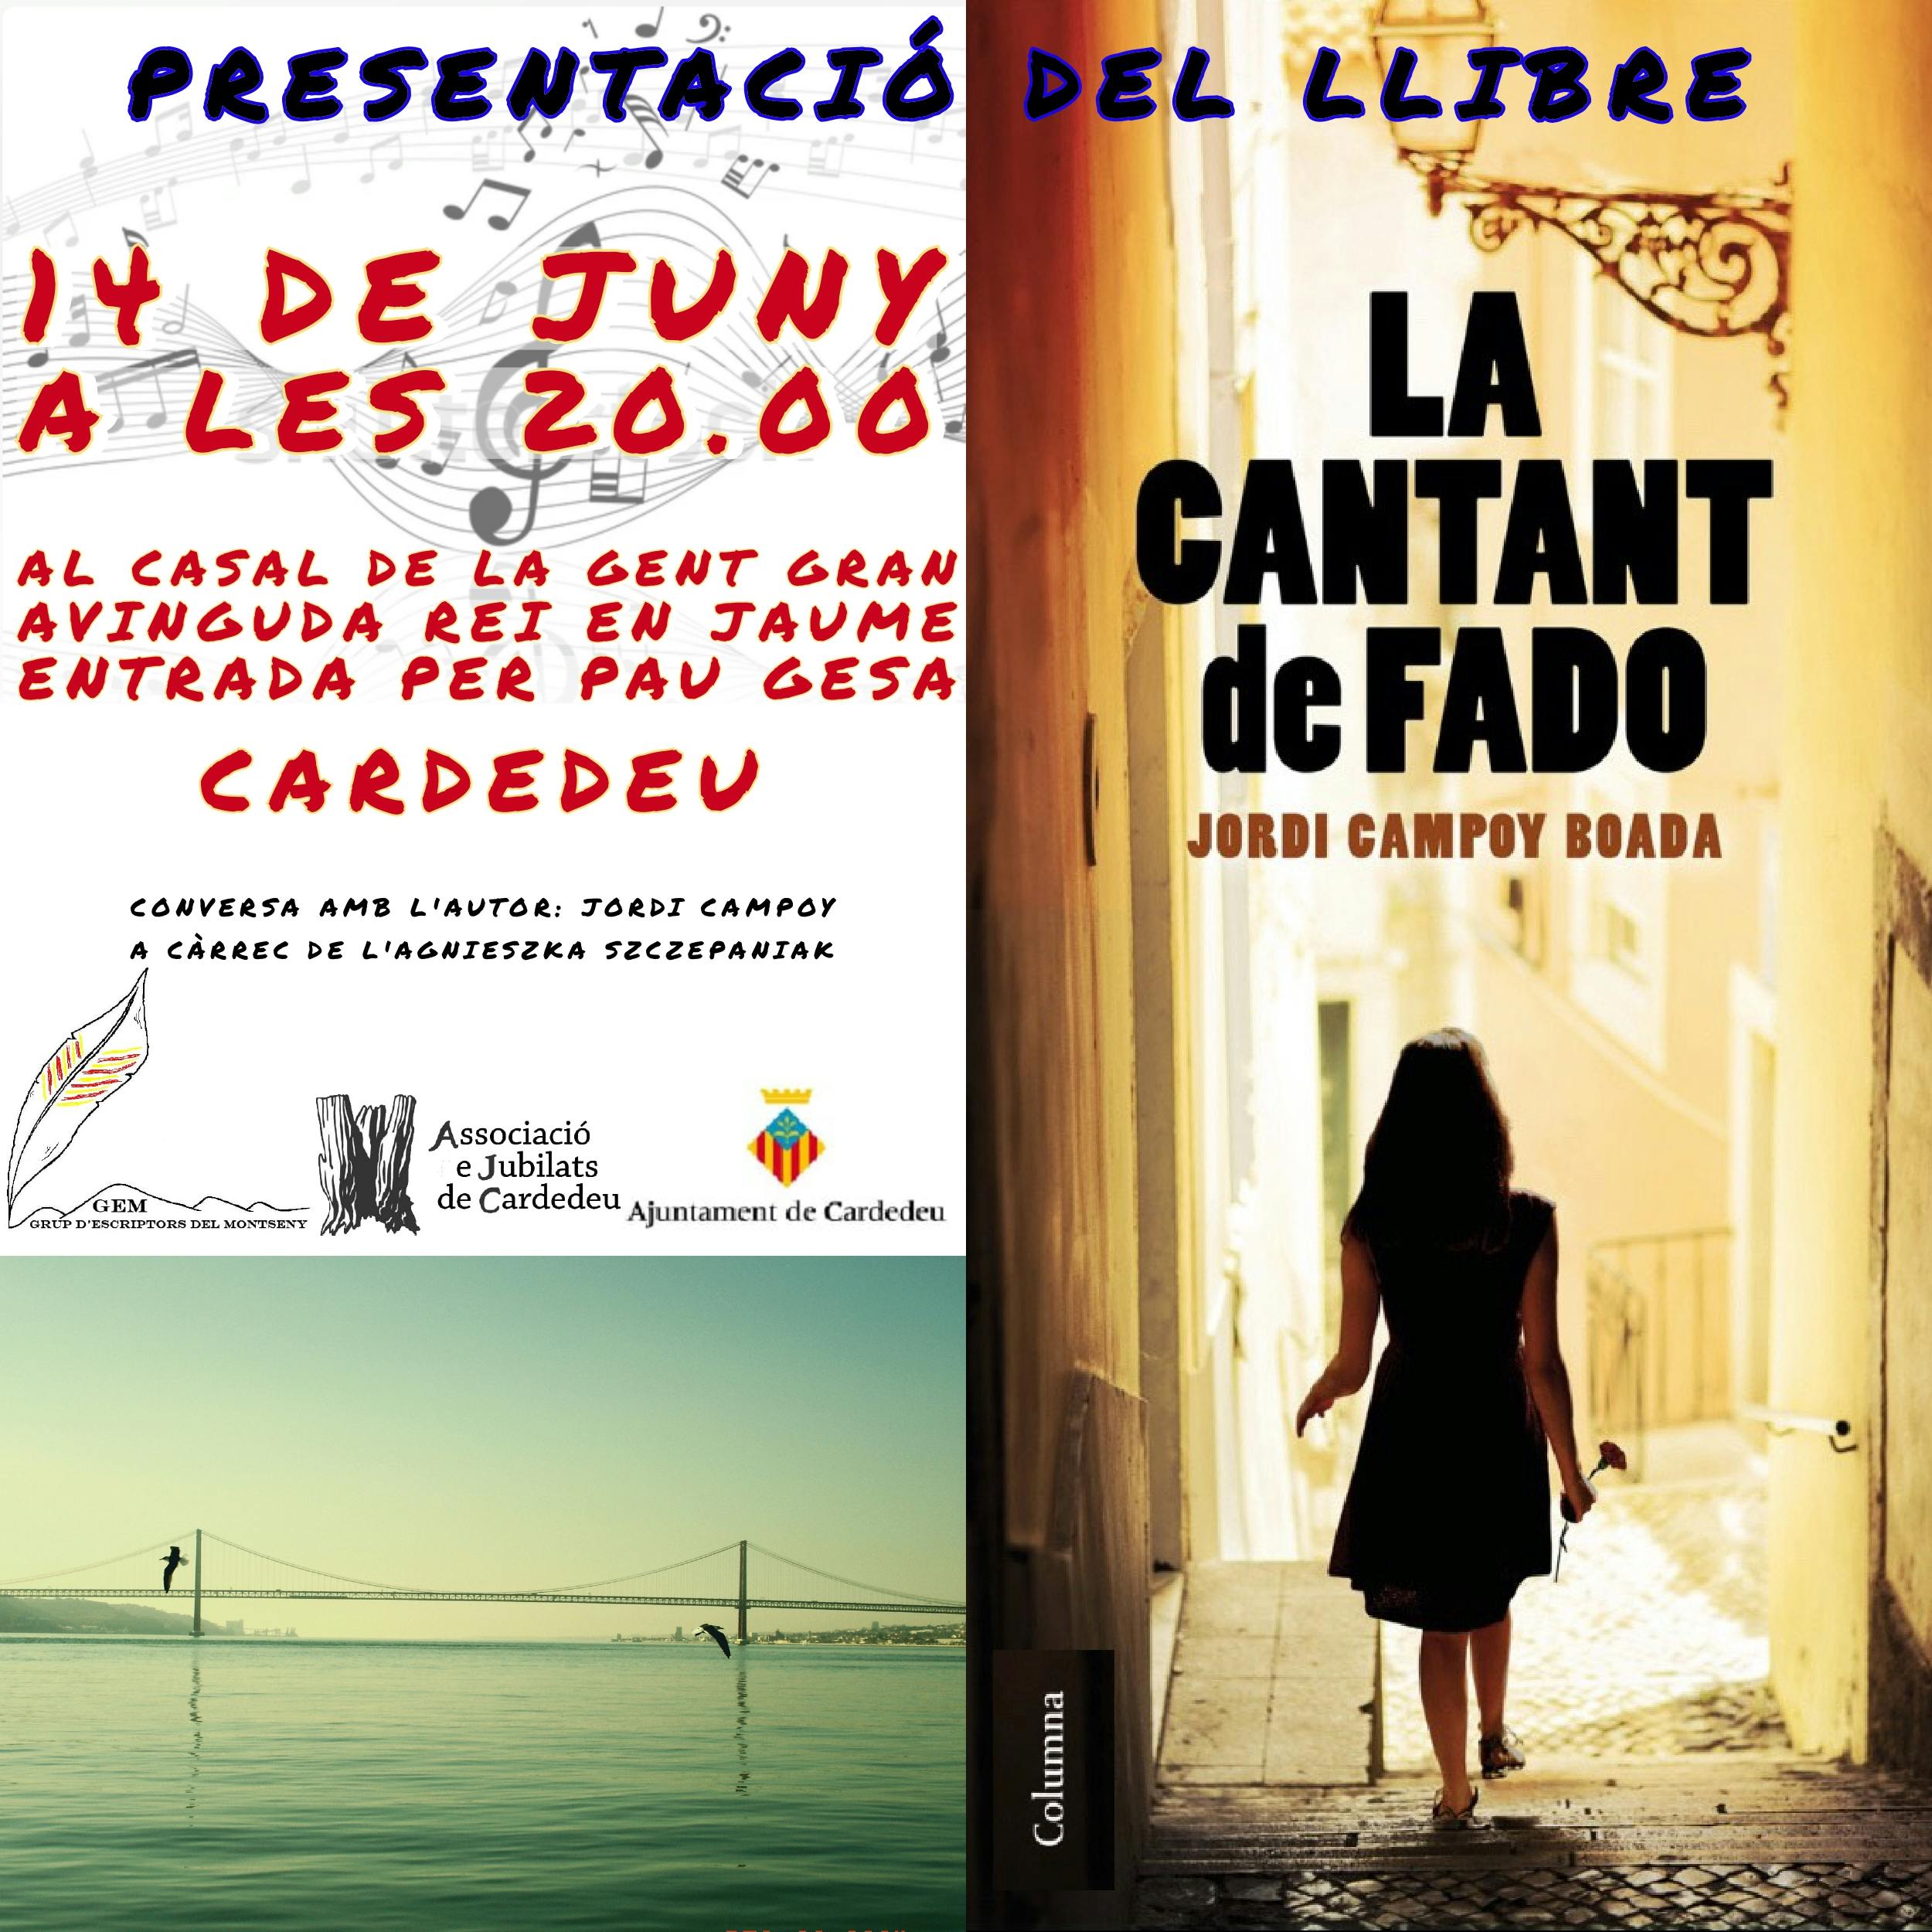 Presentació del llibre "La cantant de fado" de Jordi Campoy Boada